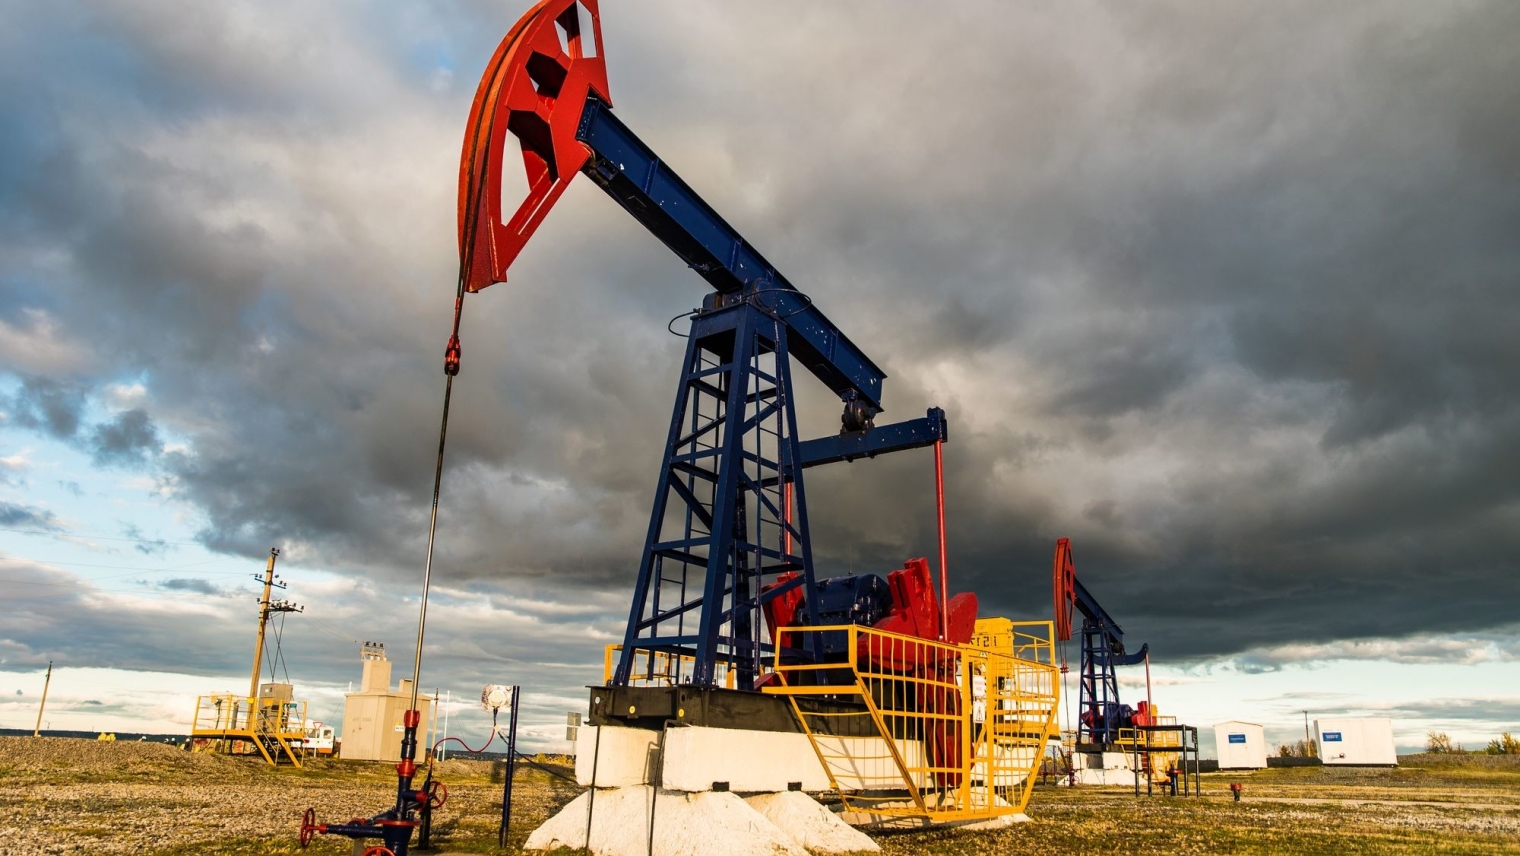 Белкамнефть Ижевск реализует программу Обустройства Решетниковского нефтяного месторождения